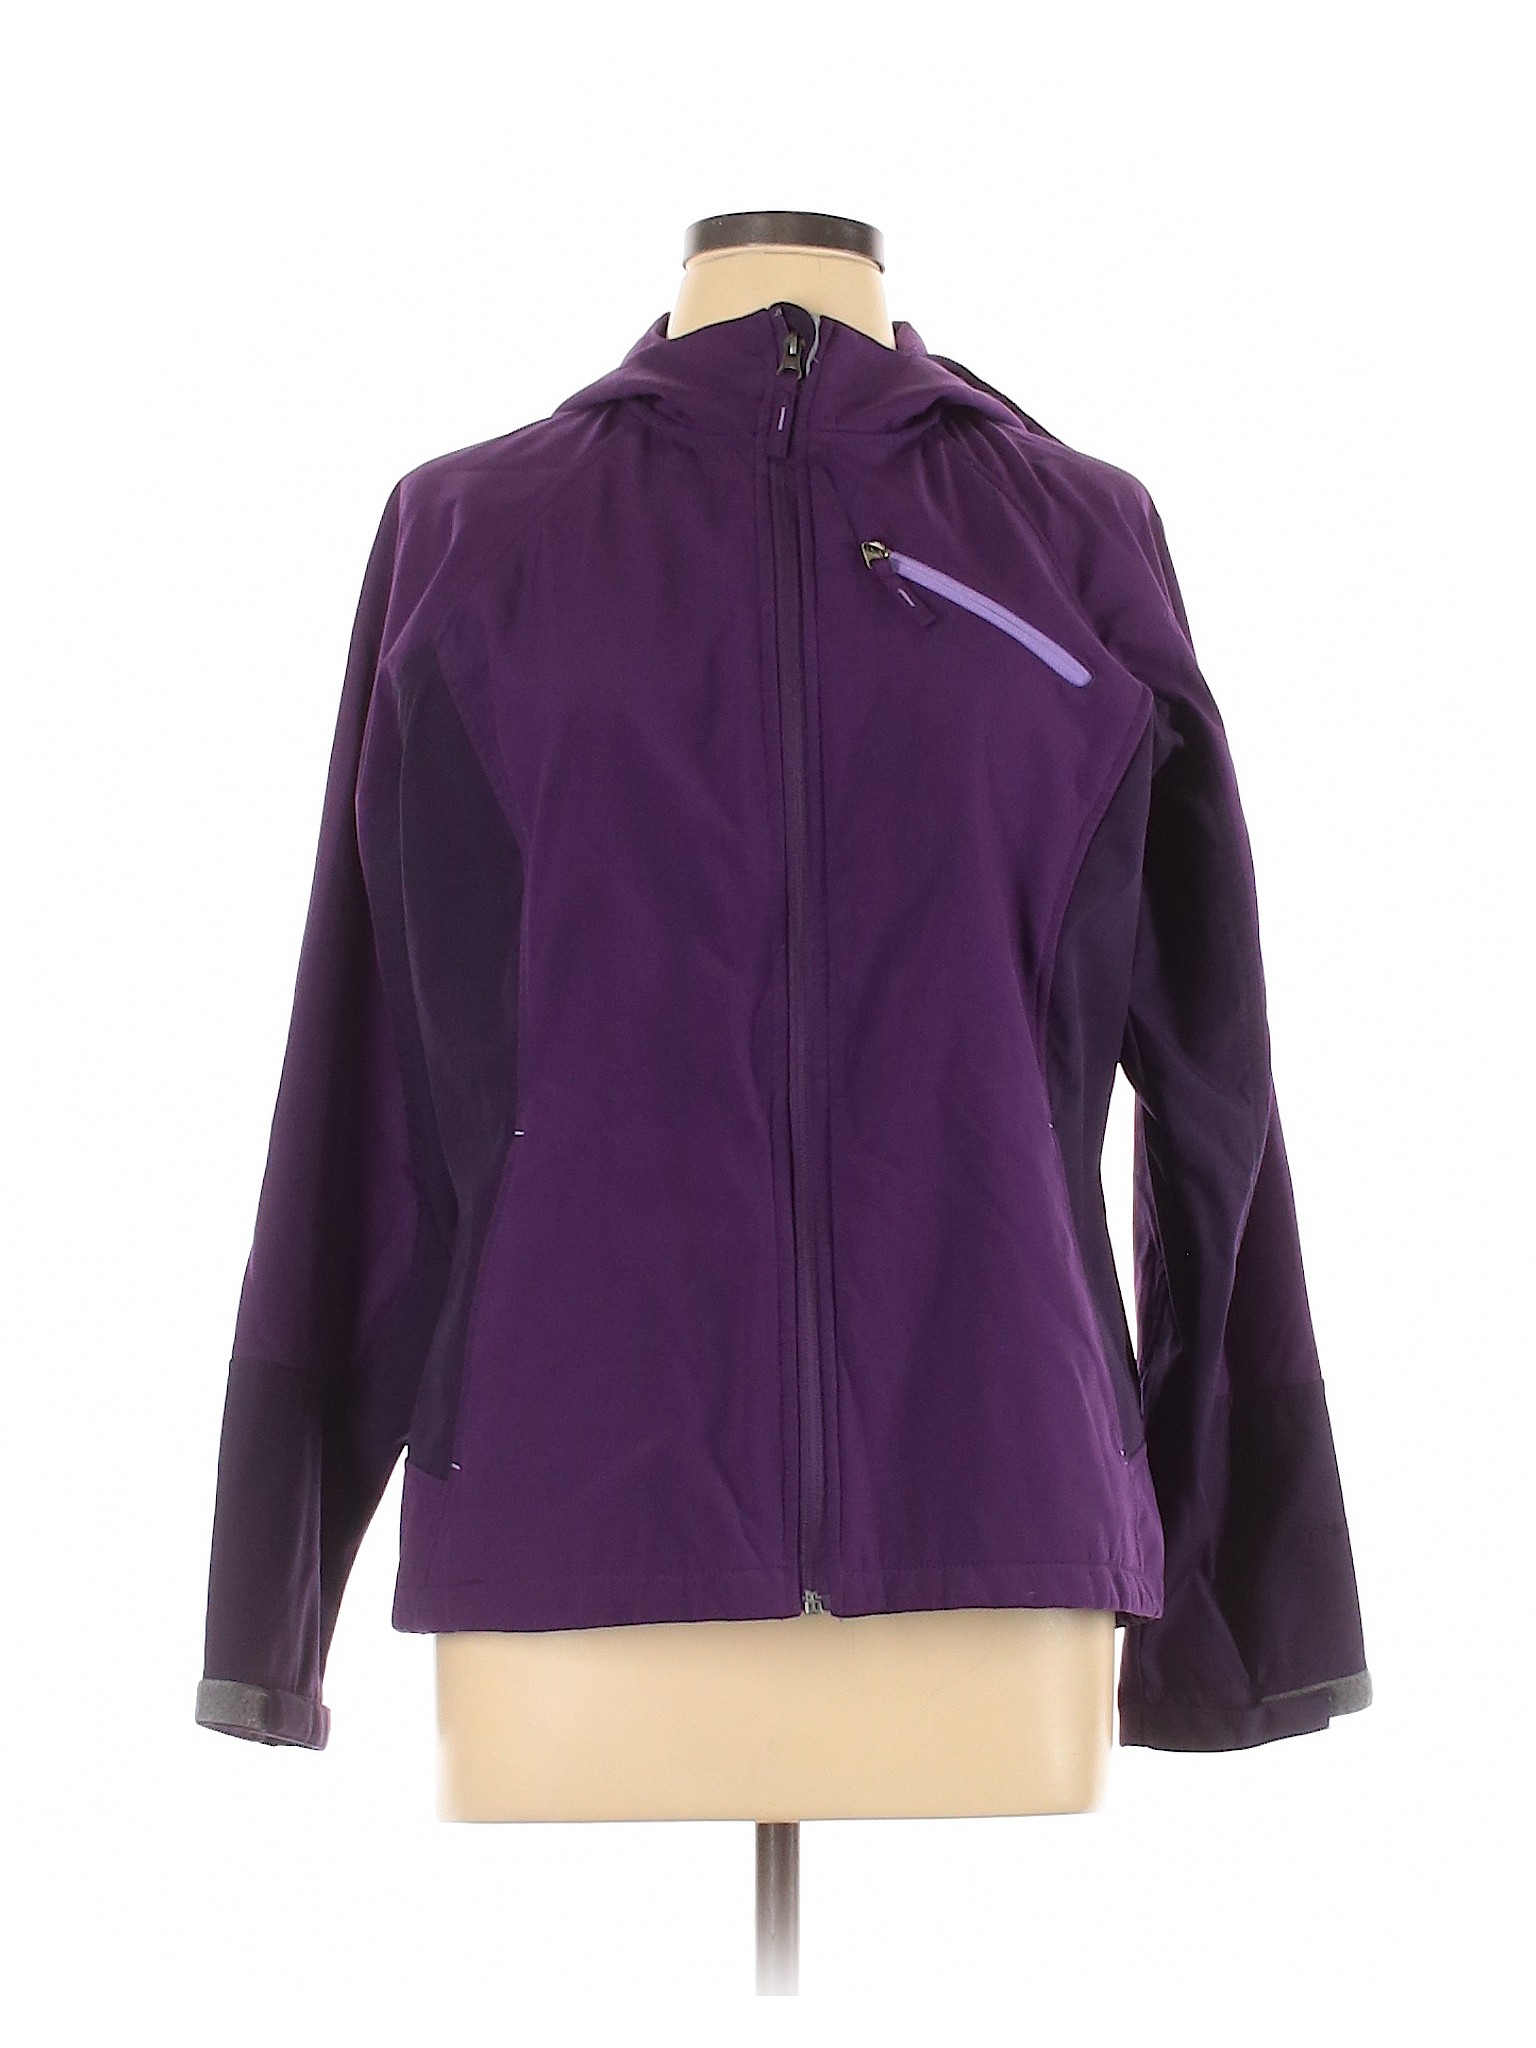 Tek Gear Women Purple Jacket L | eBay